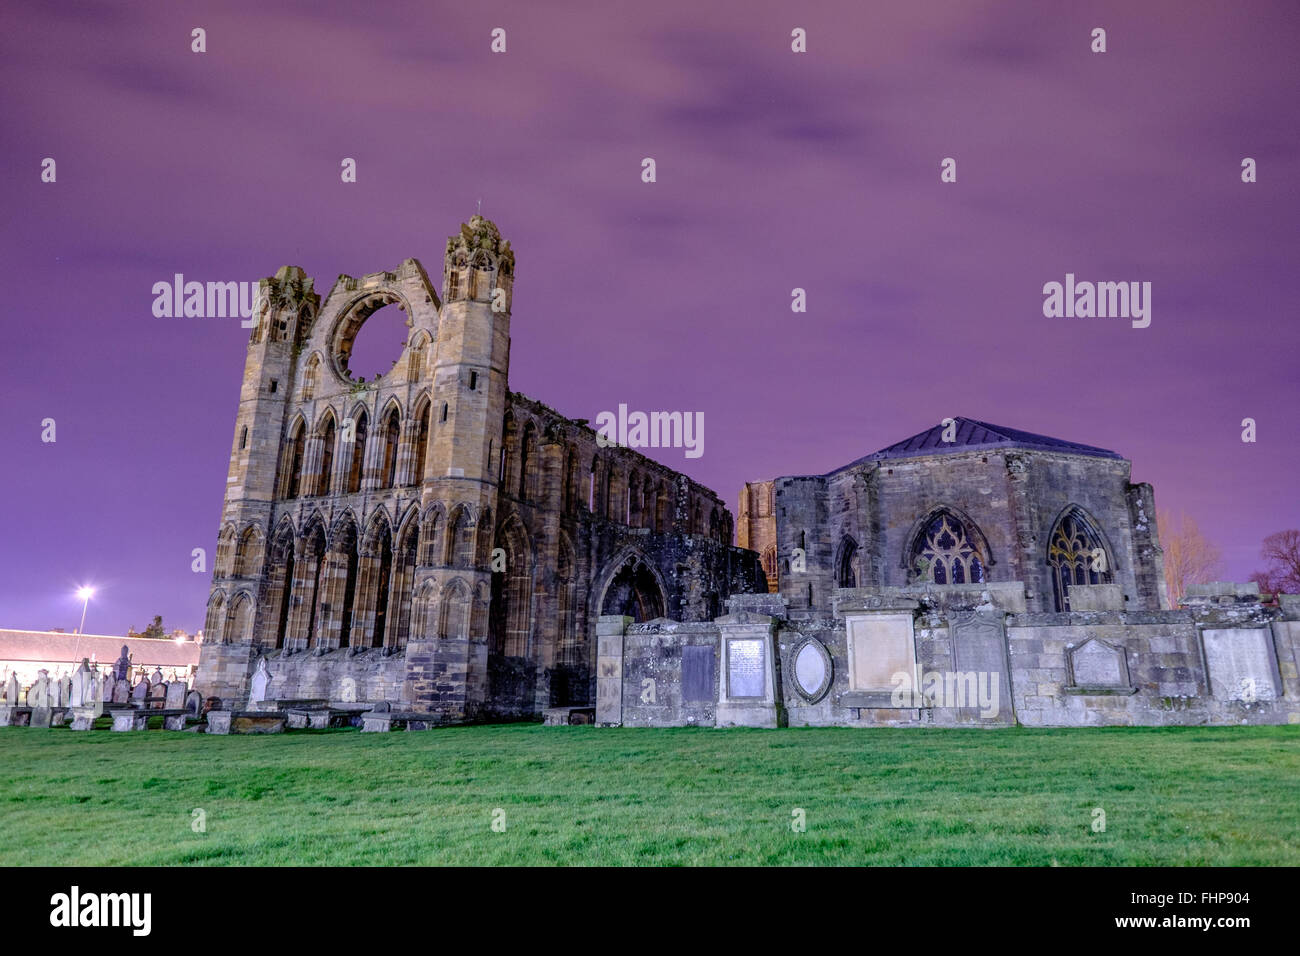 Schöne dunkle Elgin Kathedrale Ruinen Nachtaufnahme in Schottland. Stockfoto